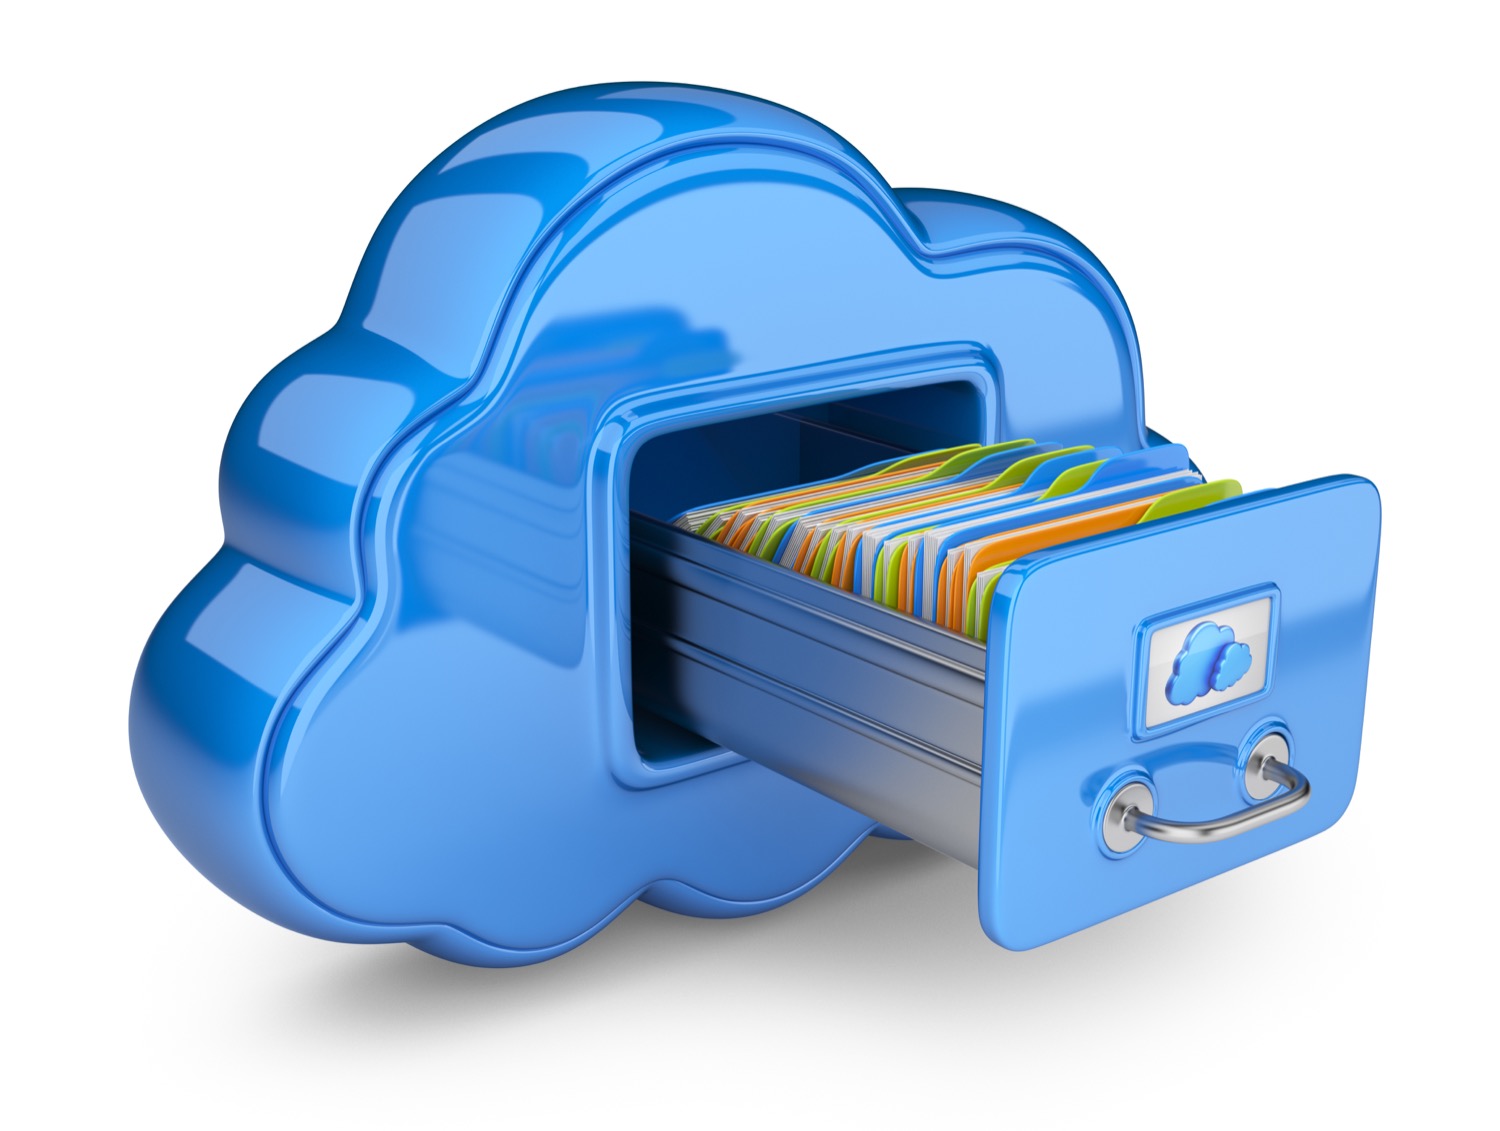 Blue file cabinet shaped like cloud